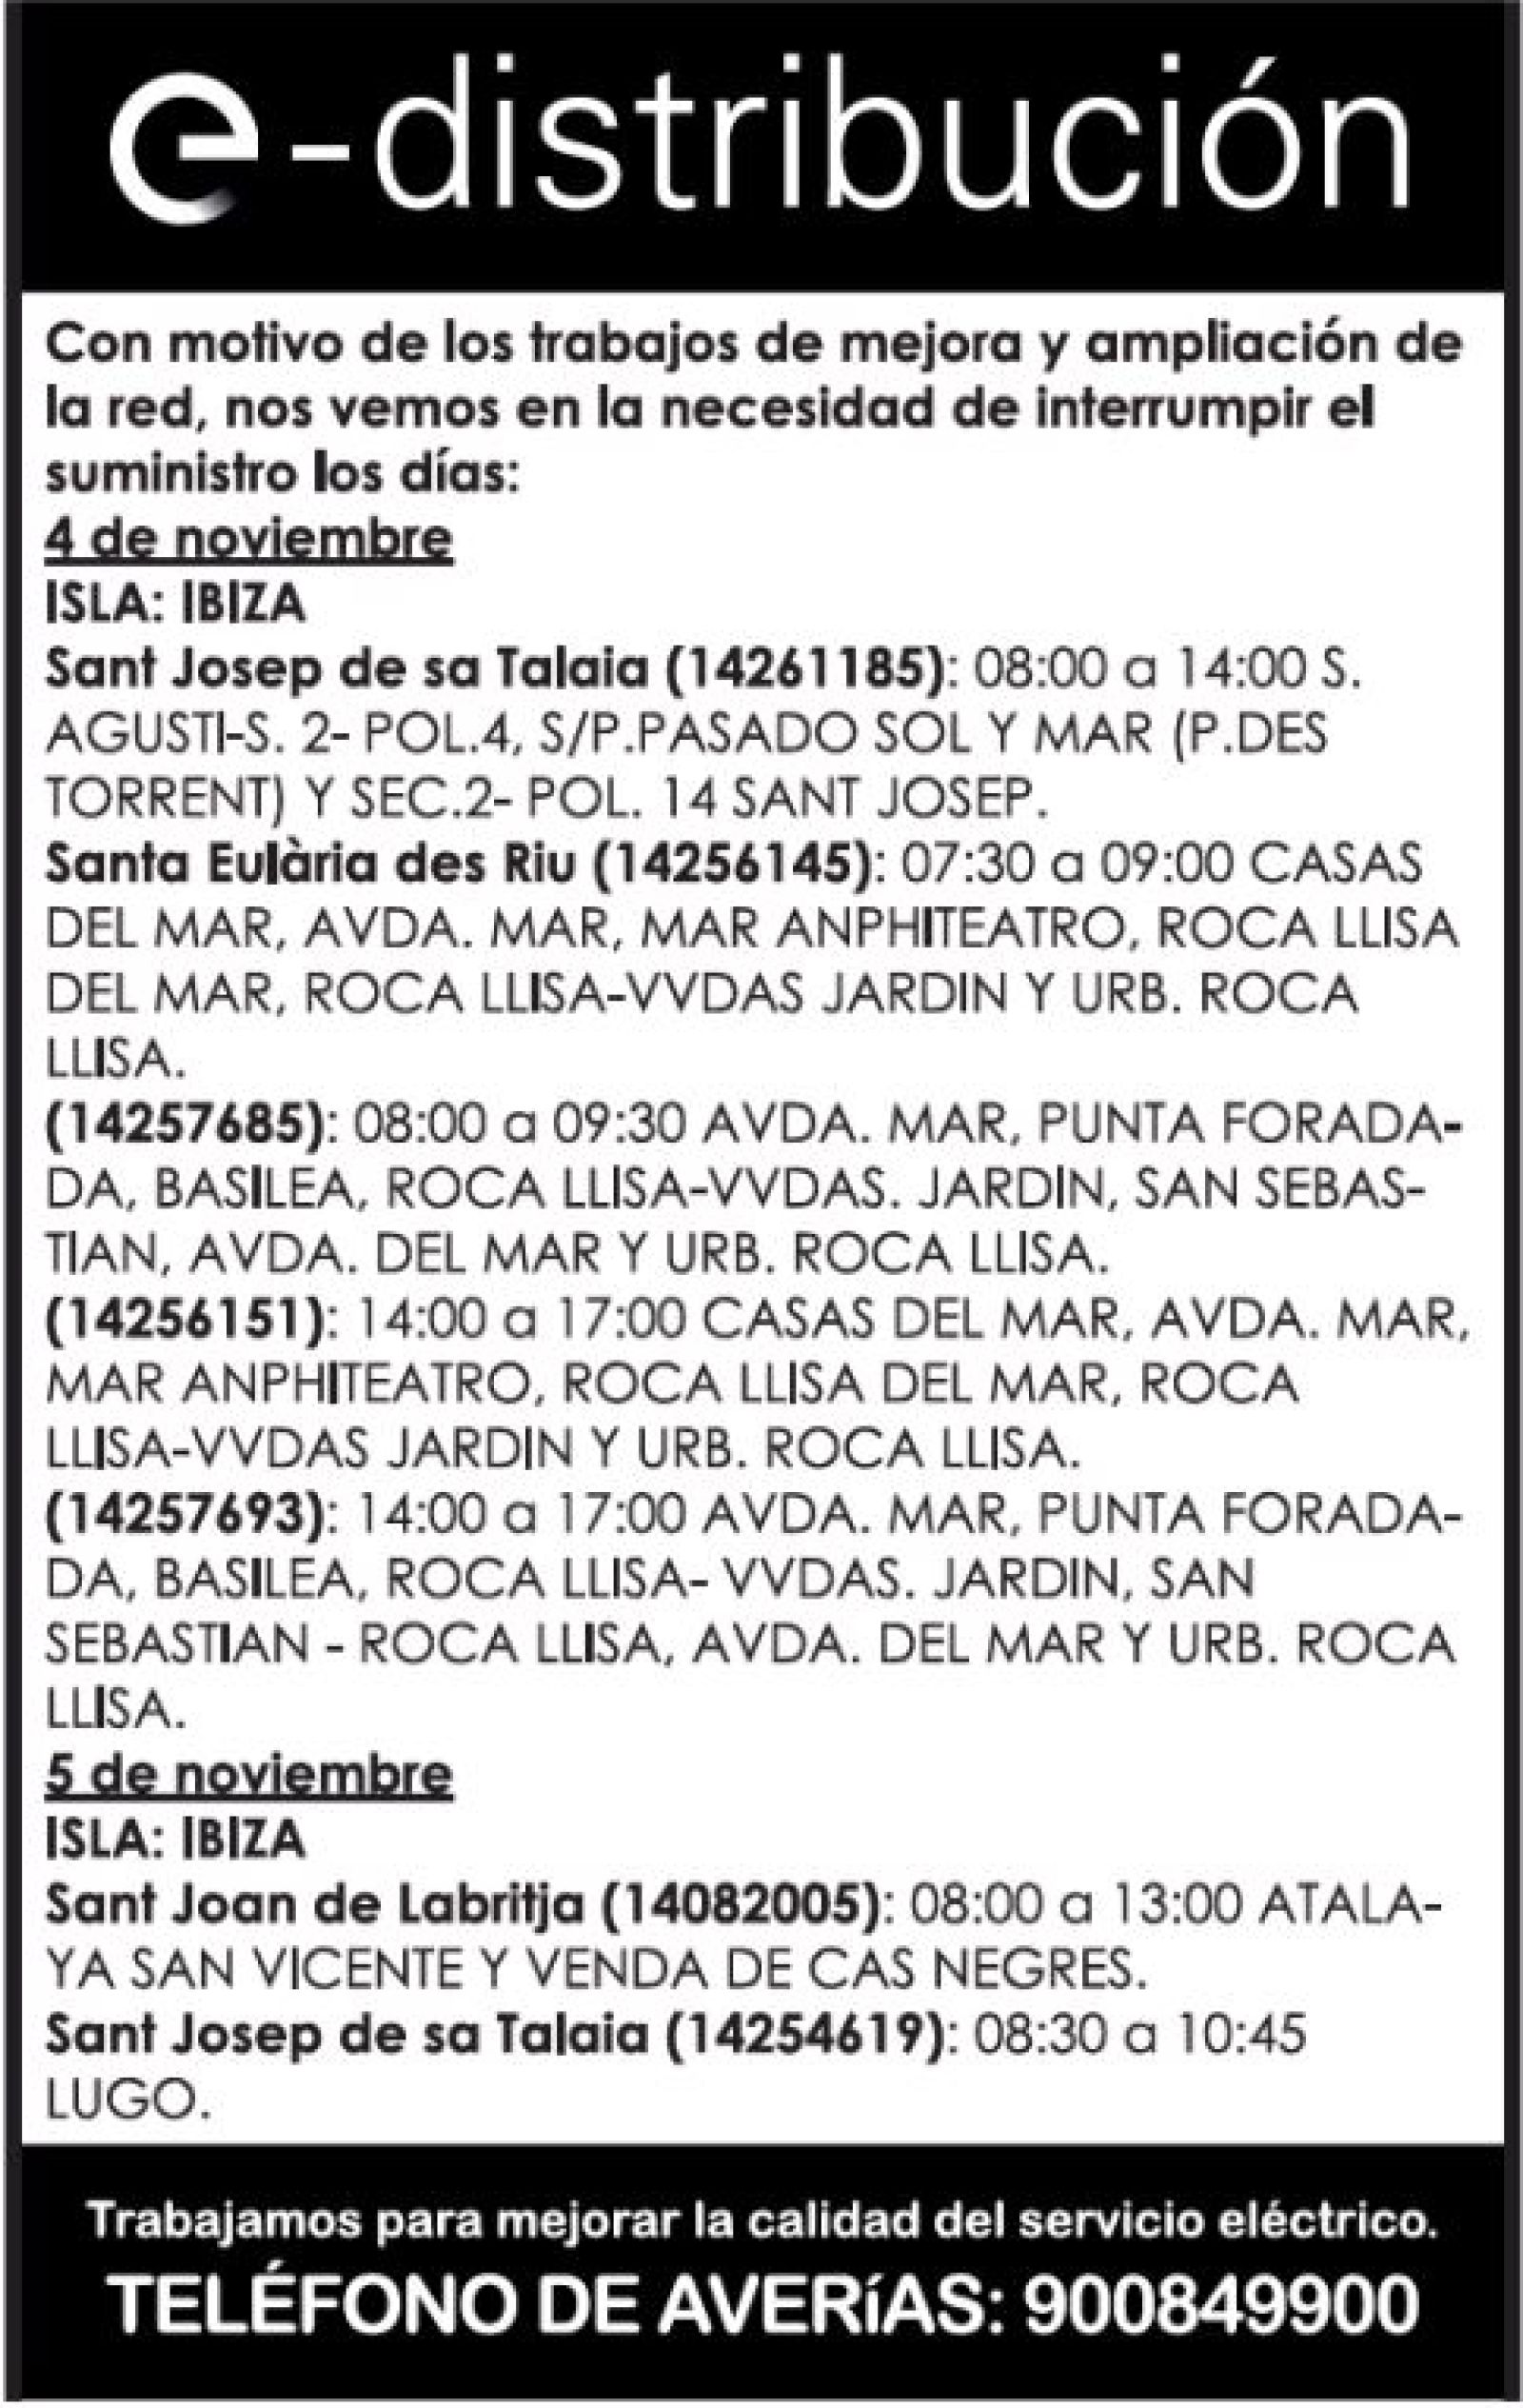 Corte temporal del suministro de energía eléctrica en diferentes zonas de Santa Eulària des Riu el día 4 de noviembre